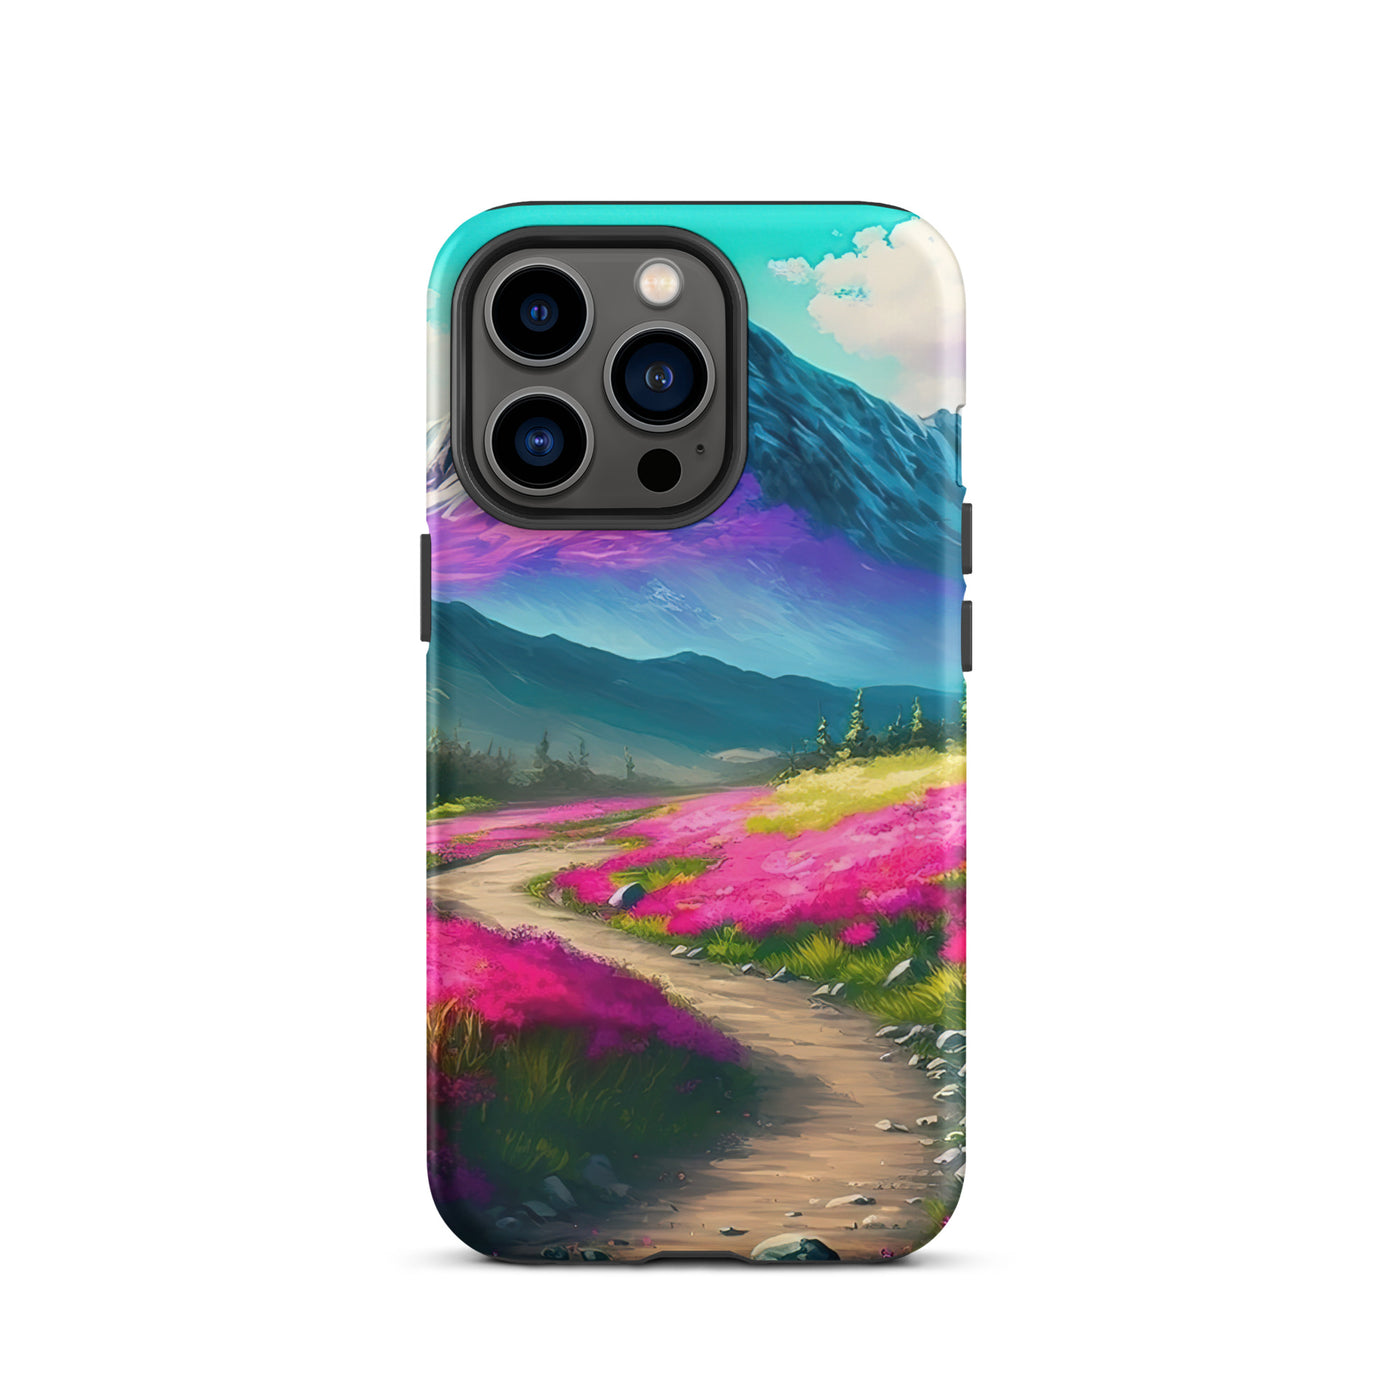 Berg, pinke Blumen und Wanderweg - Landschaftsmalerei - iPhone Schutzhülle (robust) berge xxx iPhone 13 Pro